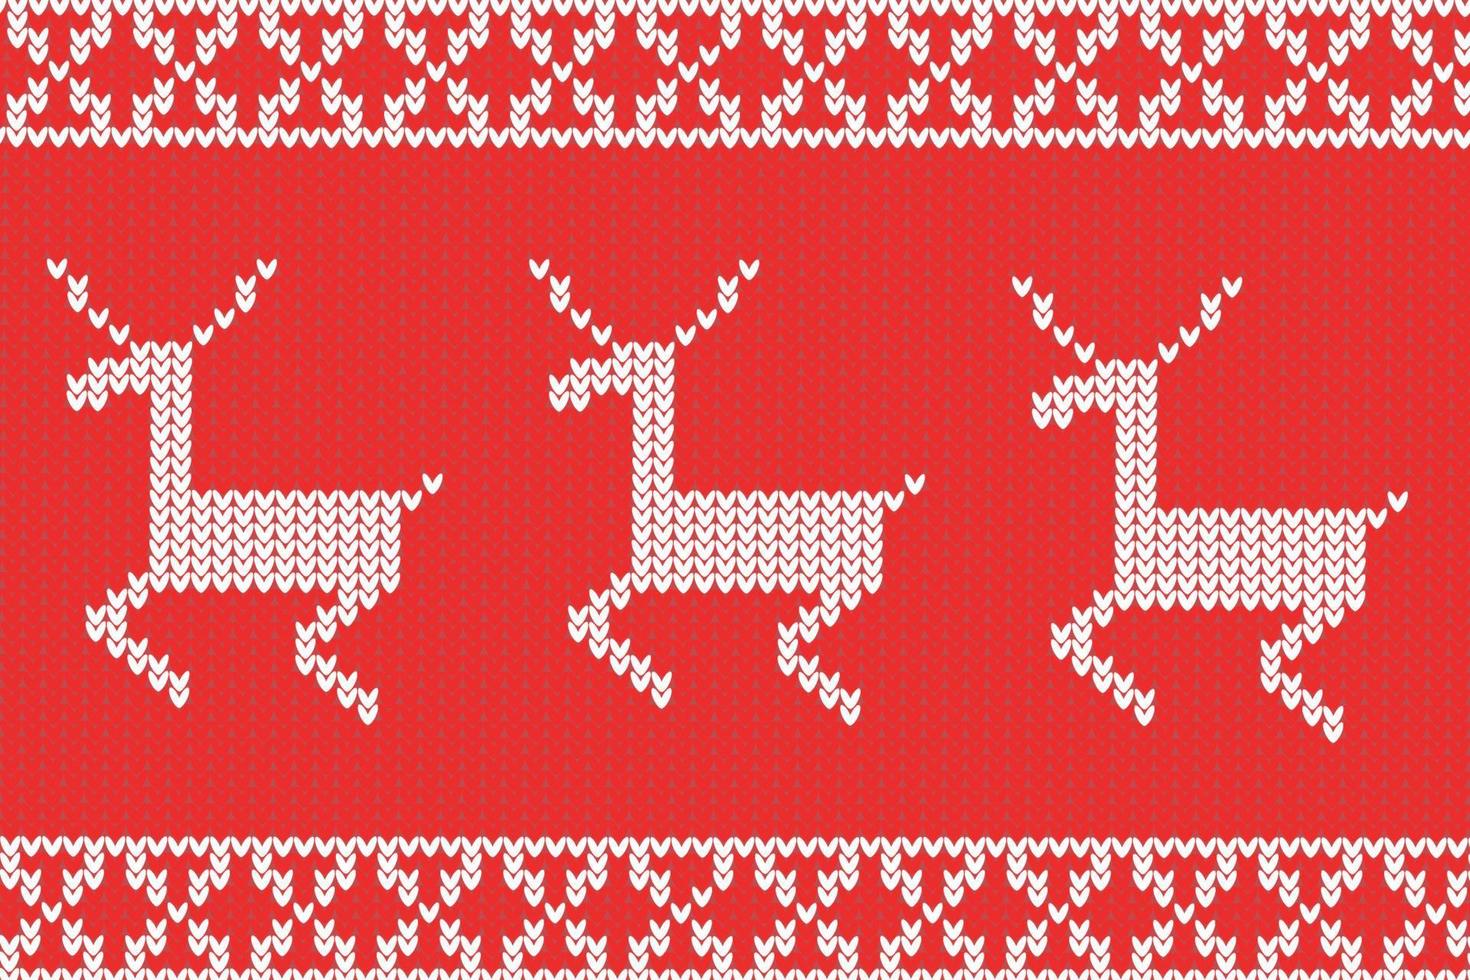 knitting red background white deer vector